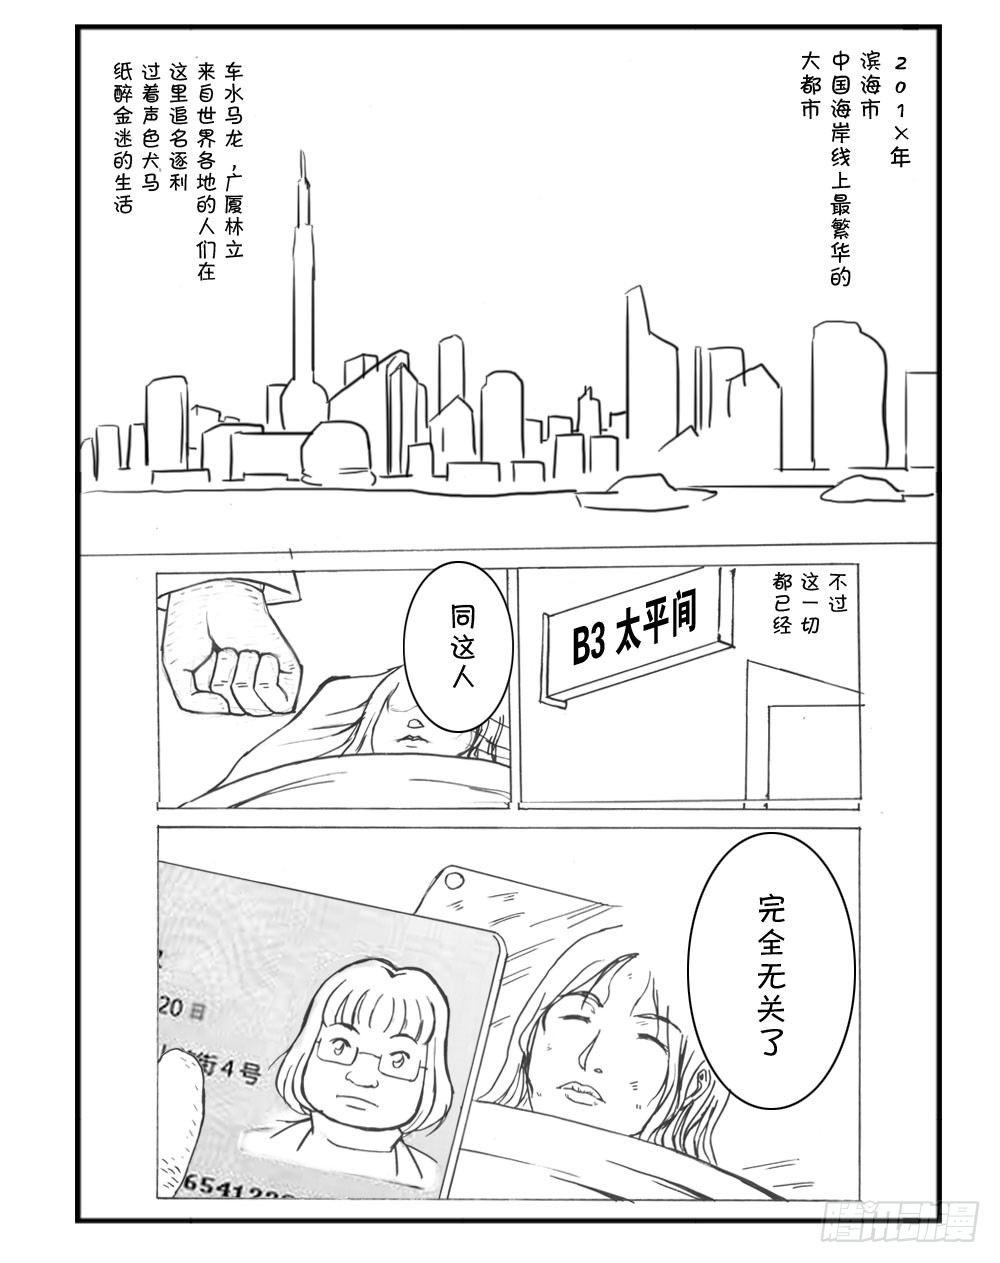 日在日本 - 333 未完的漫畫(中文) - 1